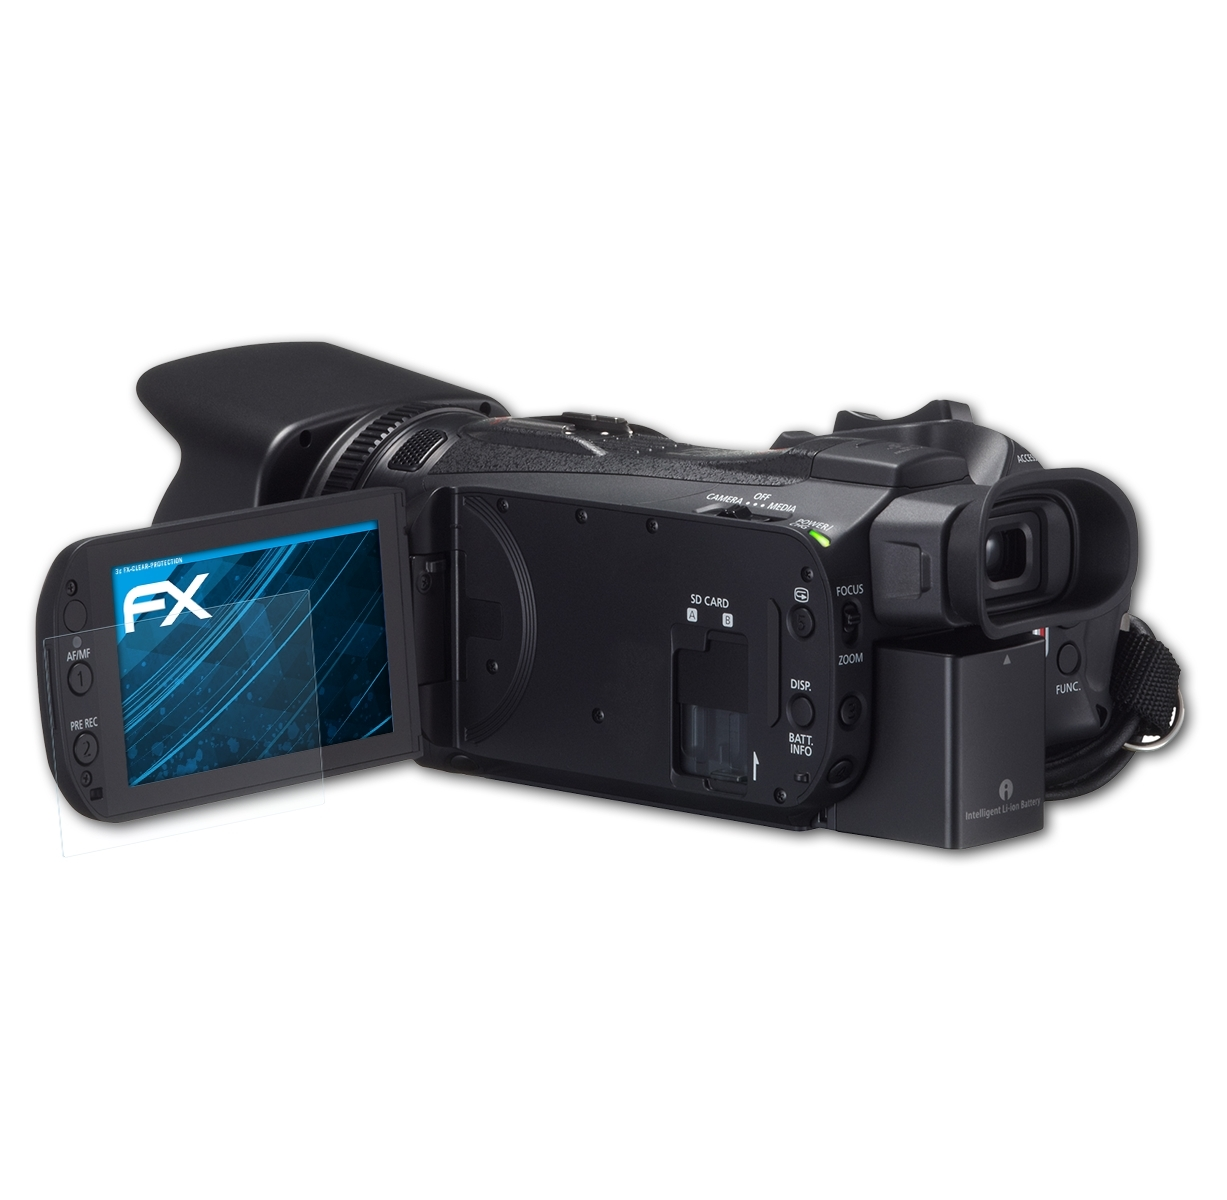 ATFOLIX 3x FX-Clear Displayschutz(für Legria HF (Vixia) Canon G30)